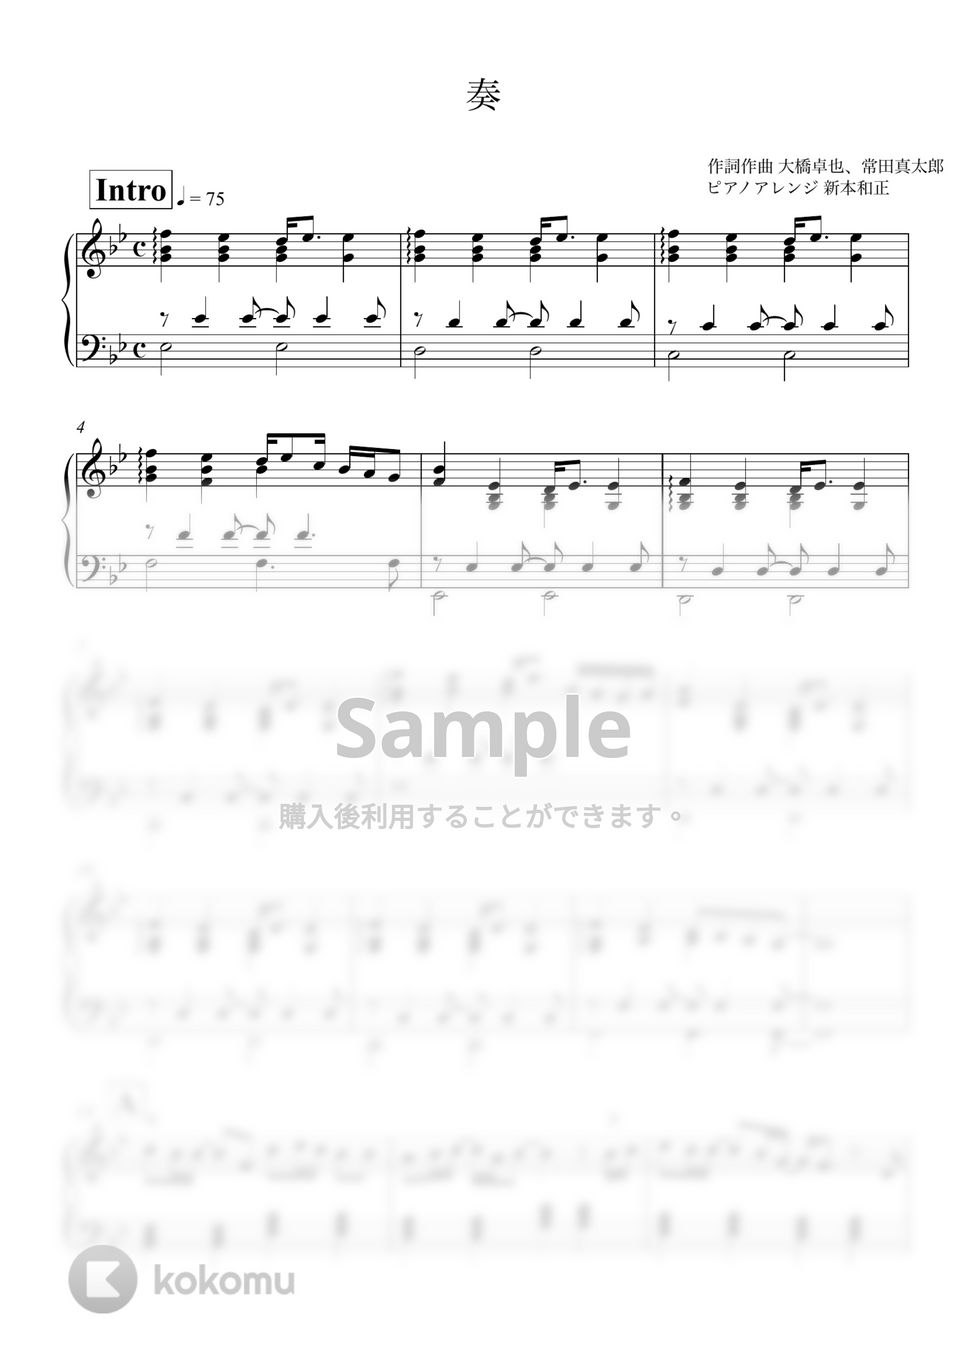 スキマスイッチ - 奏(かなで) by 新本和正